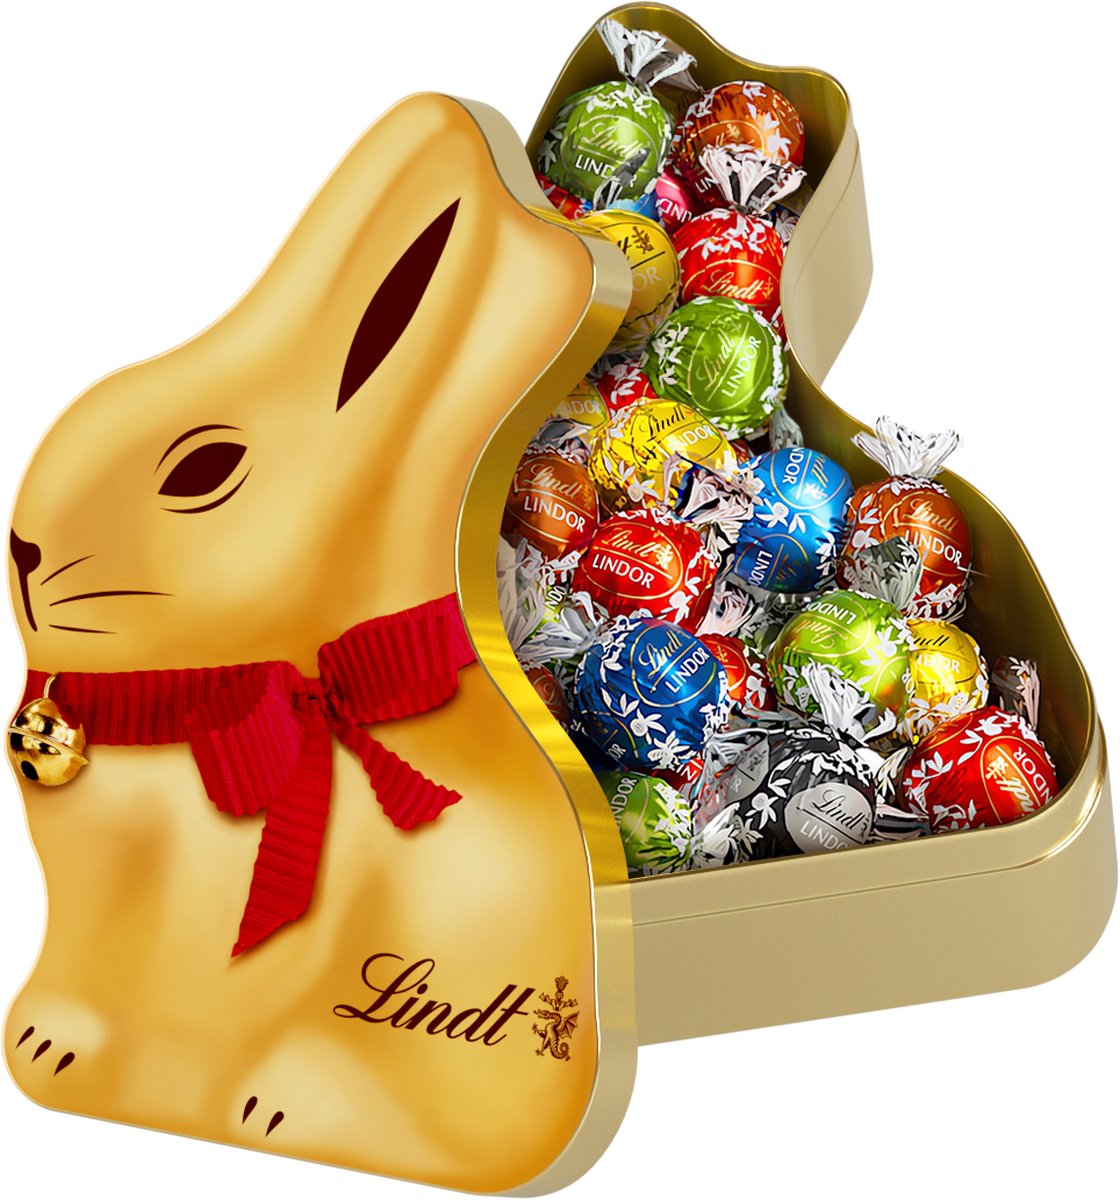 Lindt GOLD BUNNY blik met Bonbons - Gouden paashaas blik - 350 gram LINDOR Bonbons - Pasen cadeau - Paaschocolade - Herbruikbaar Pasen blik - Lindt